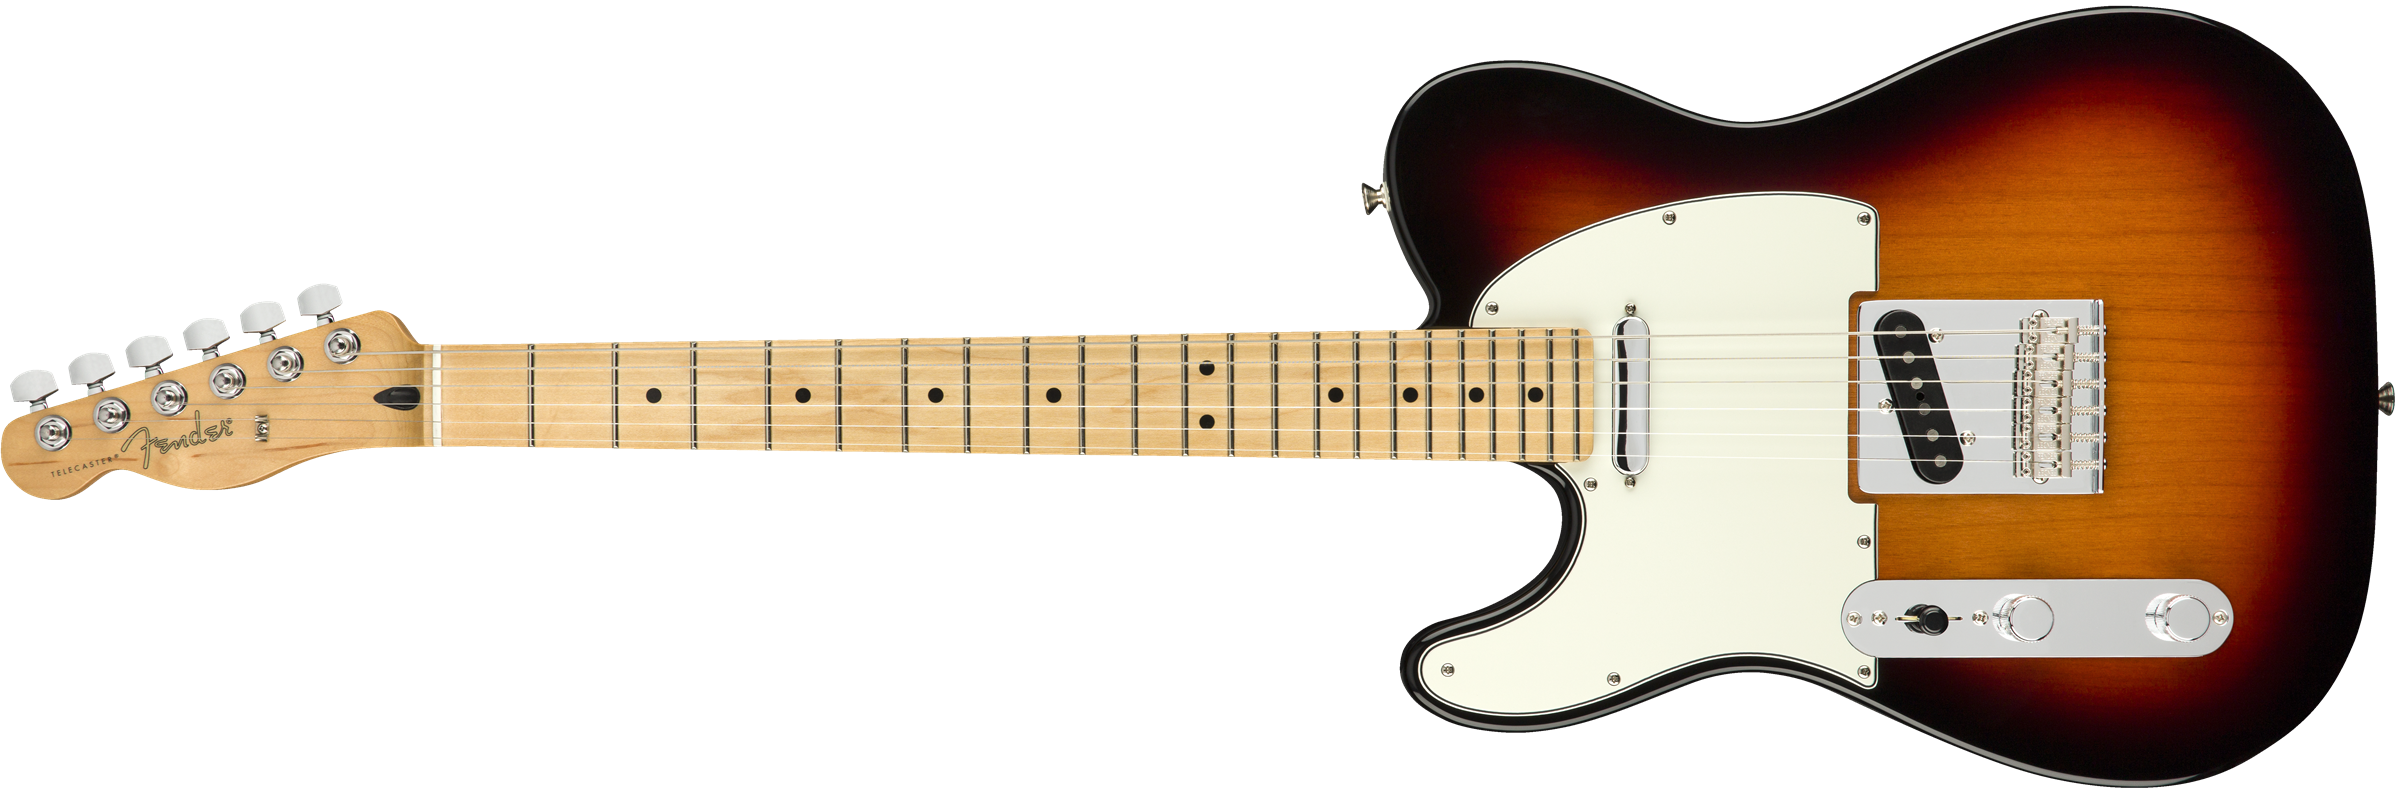 Fender Tele Player Lh Gaucher Mex Ss Mn - 3-color Sunburst - Linkshandige elektrische gitaar - Variation 1